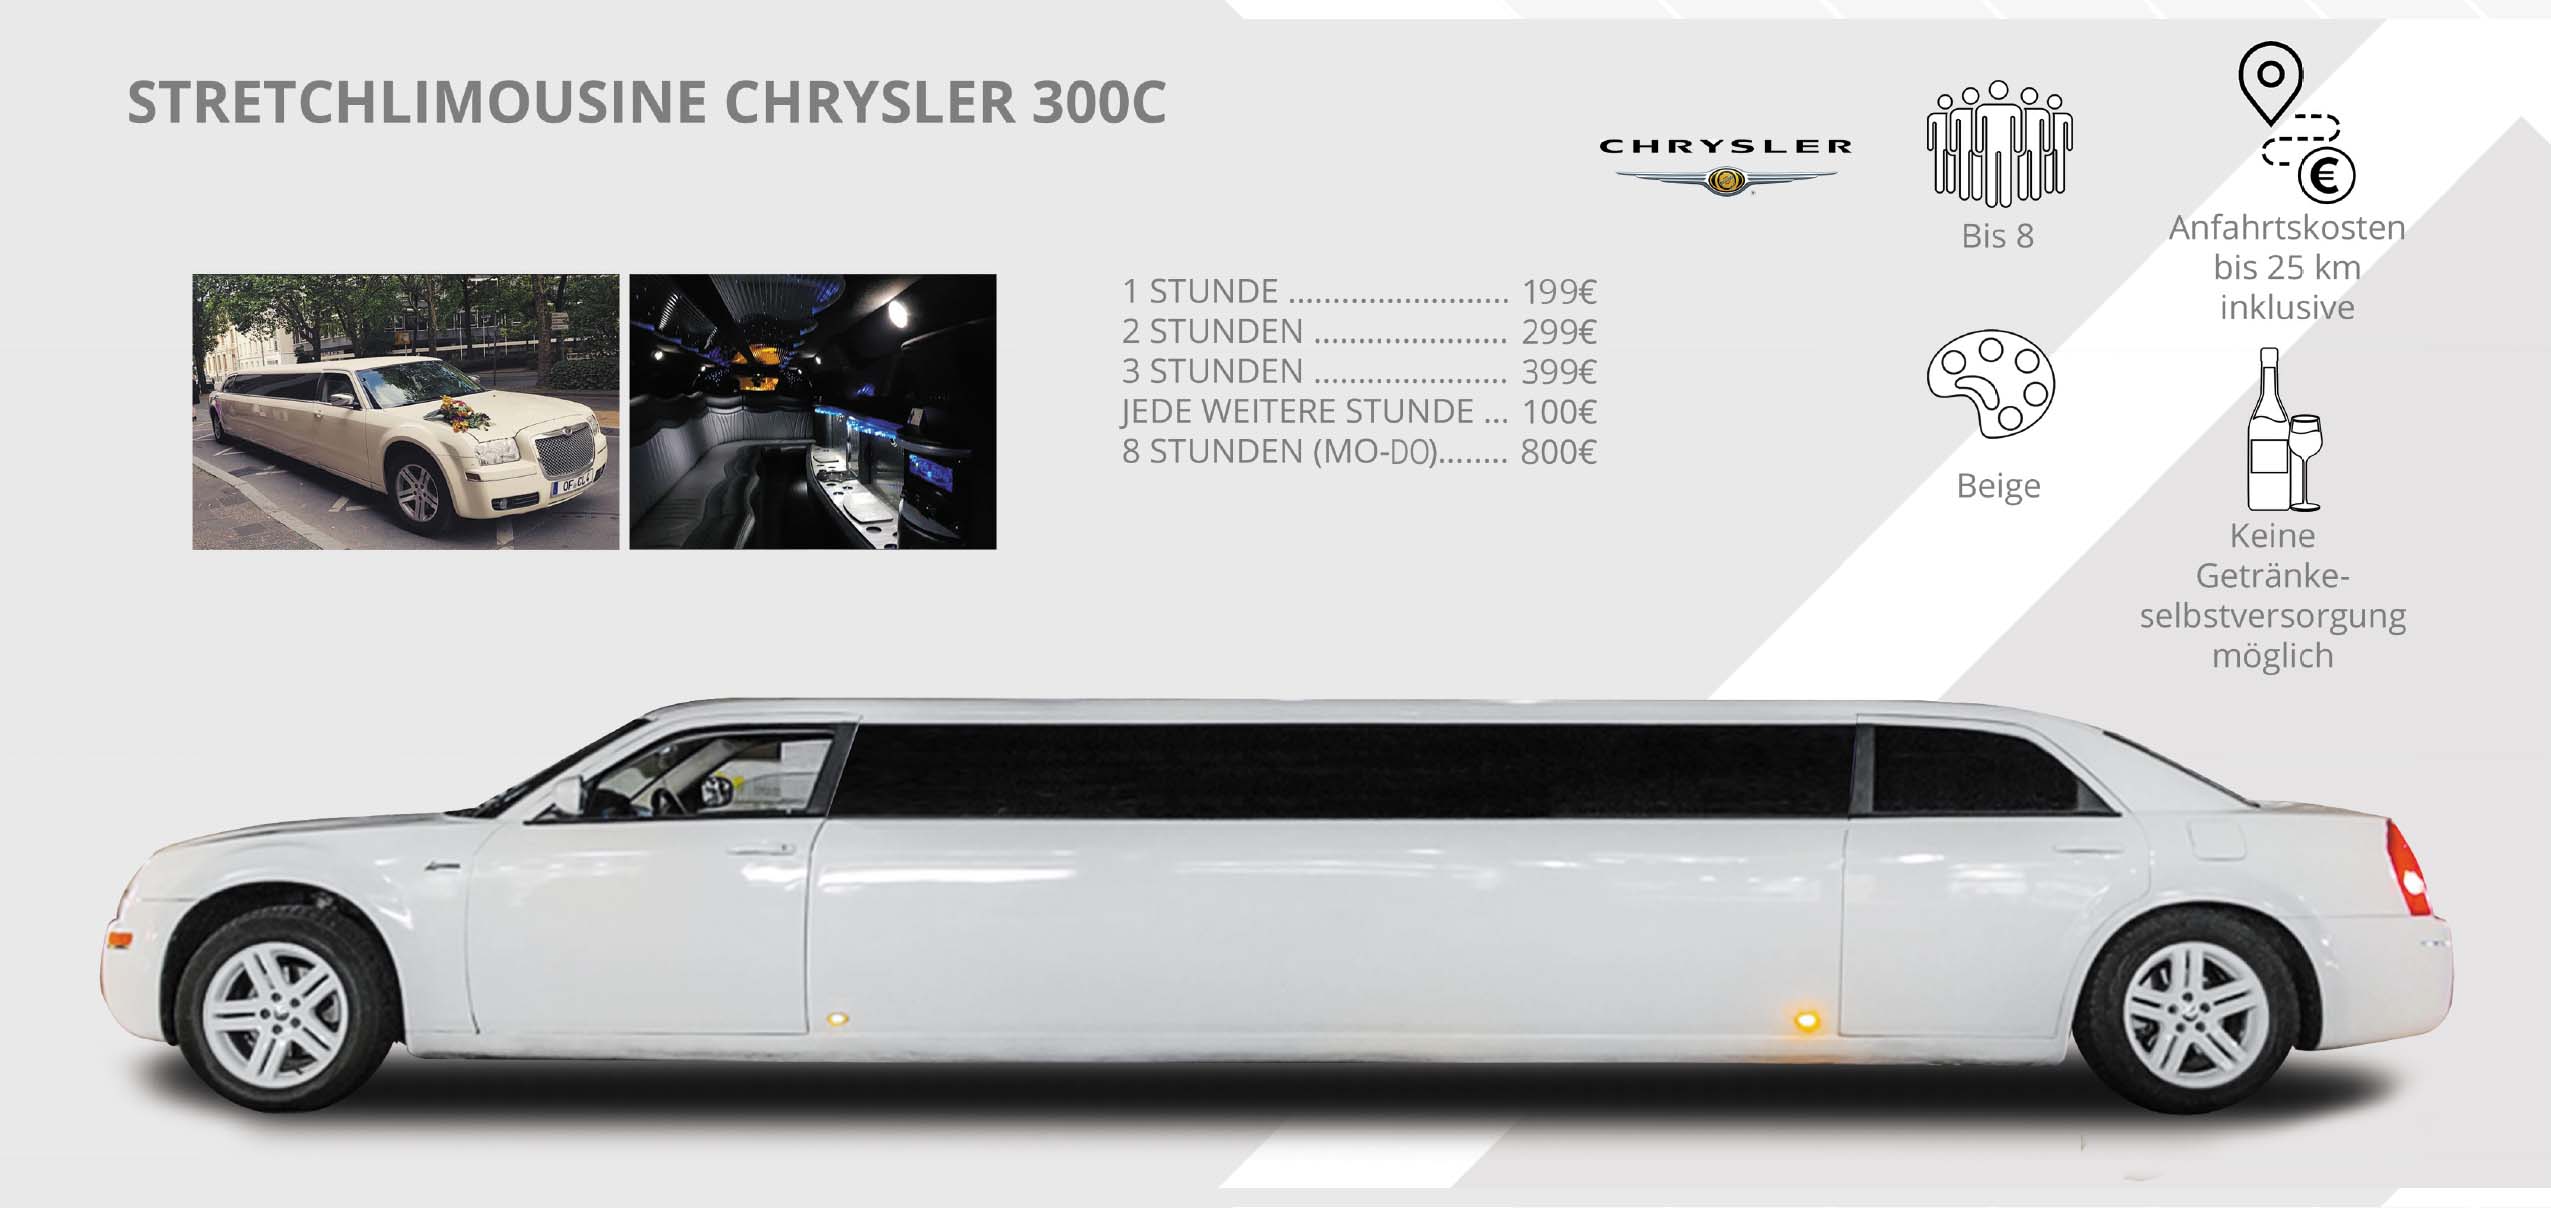 Weiße Chrysler 300C Stretchlimousine für bis zu 8 Personen, keine eigenen Getränke erlaubt, Preise ab 199€